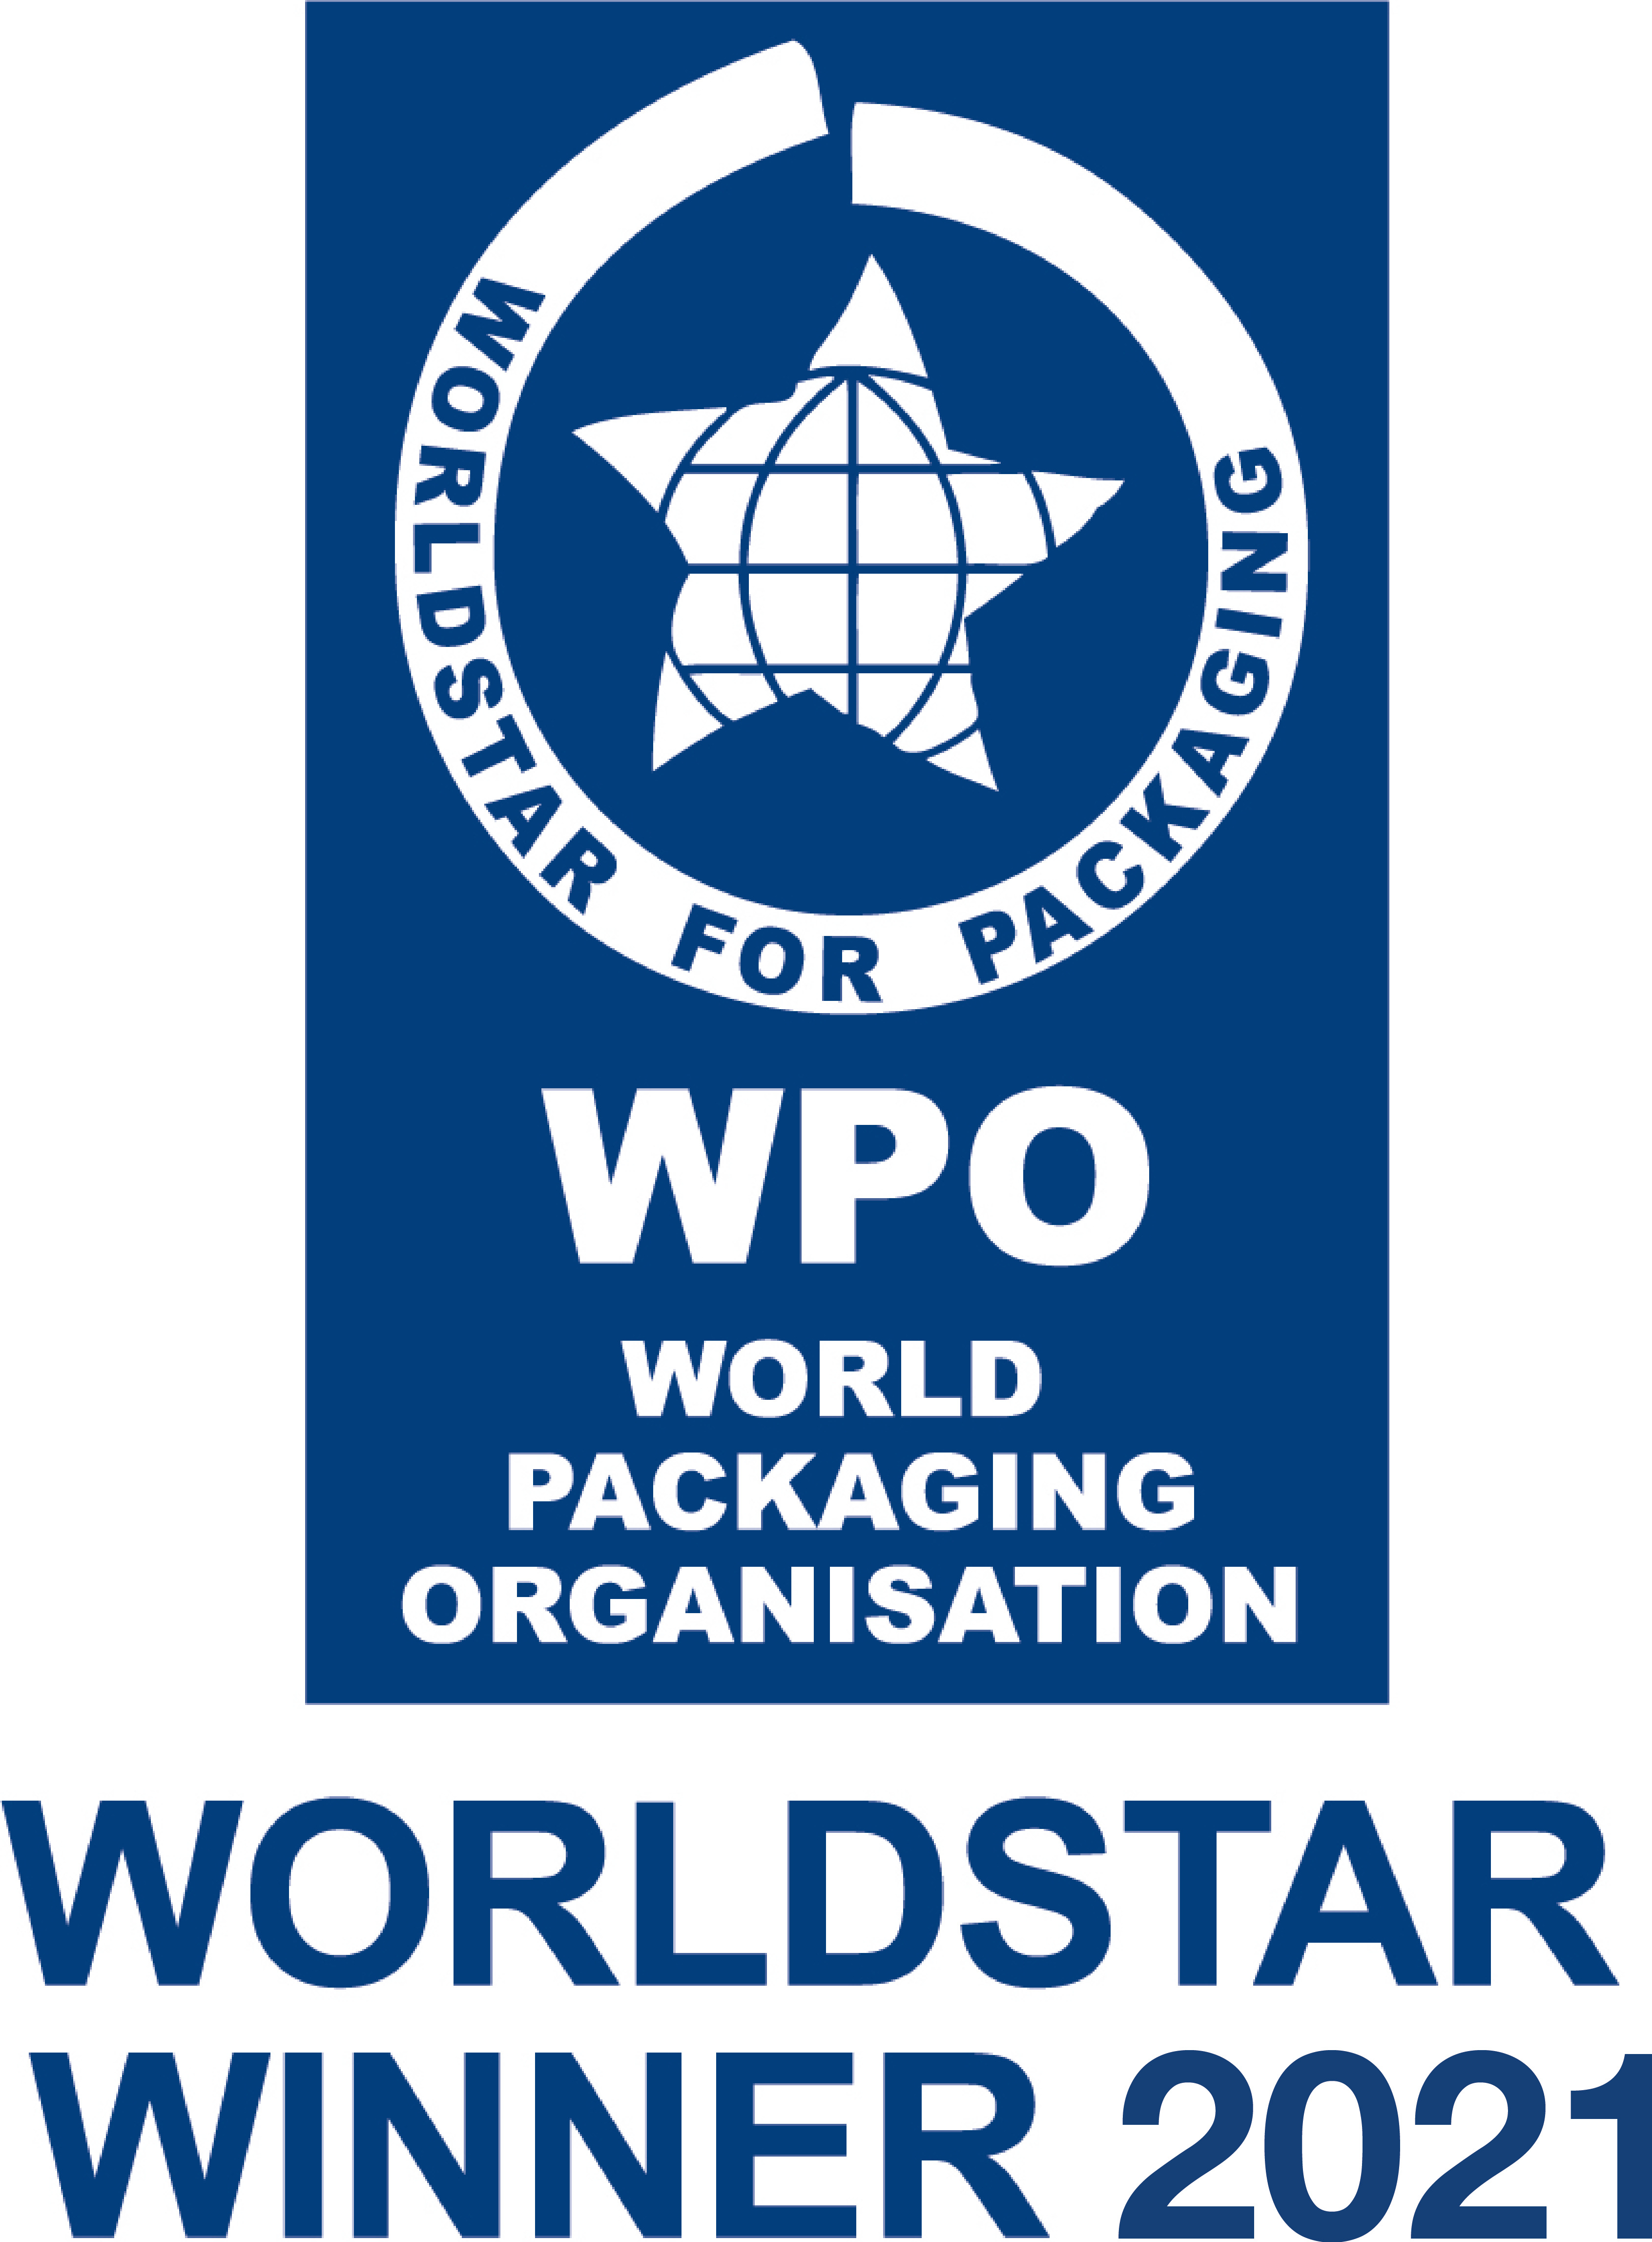 Kyocera Document Solutions Receives WorldStar Award 2021 from World Packaging Organization.